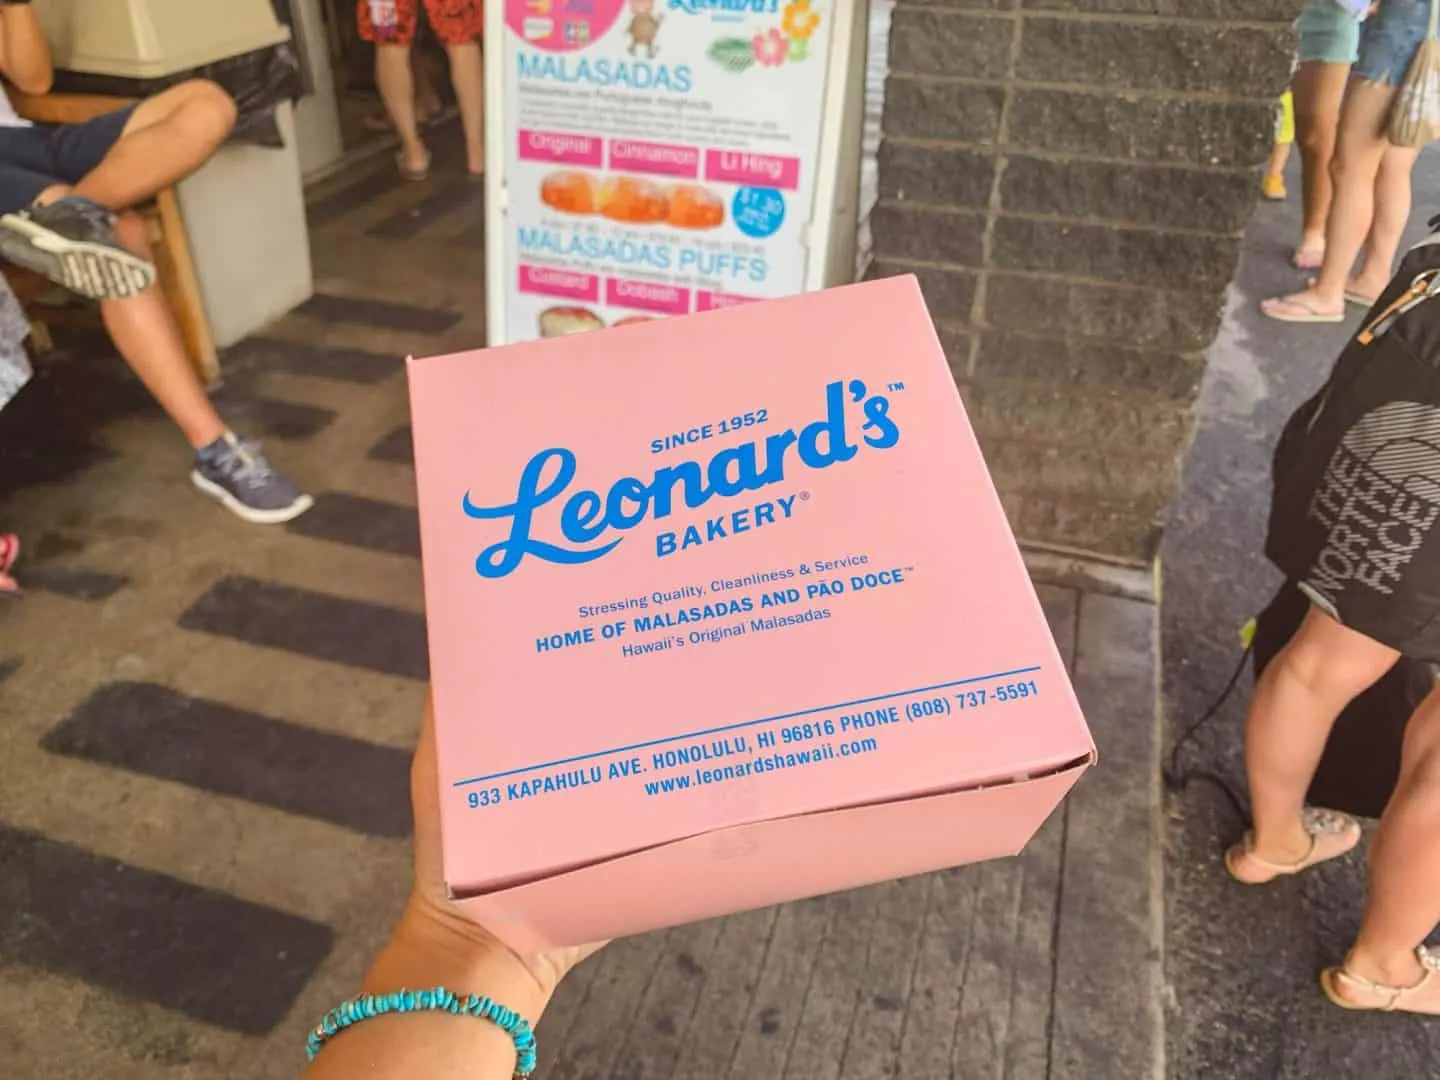 Leonard's Bakery in Oahu, Hawaii